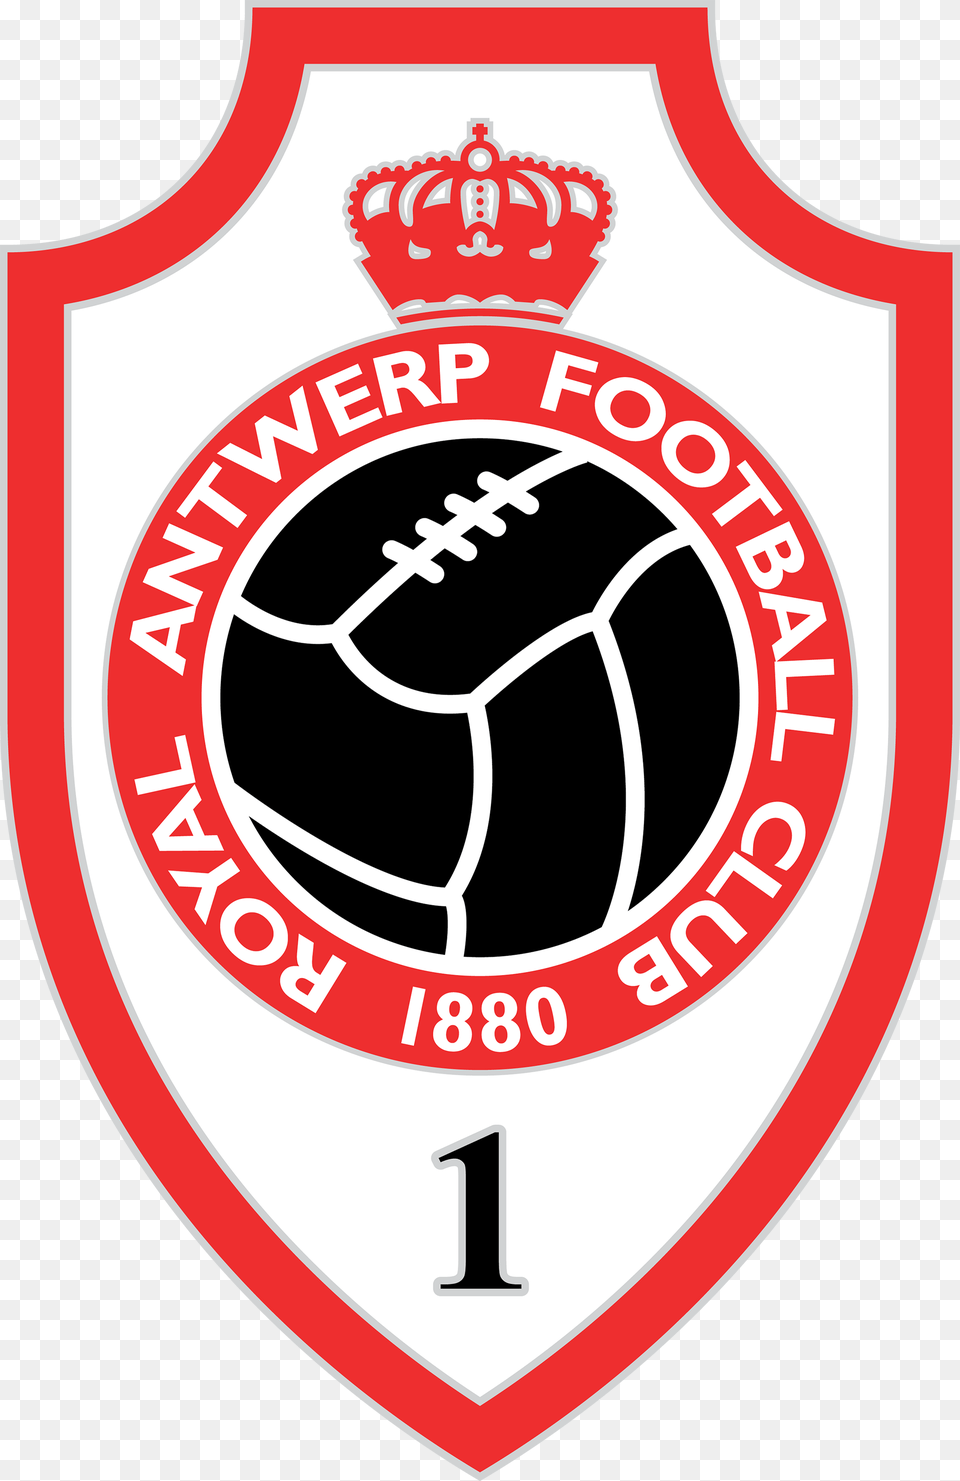 Het Logo Van Royal Antwerp Football Club Met Gouden Royal Antwerp Fc Logo, Badge, Symbol, Ammunition, Grenade Png Image